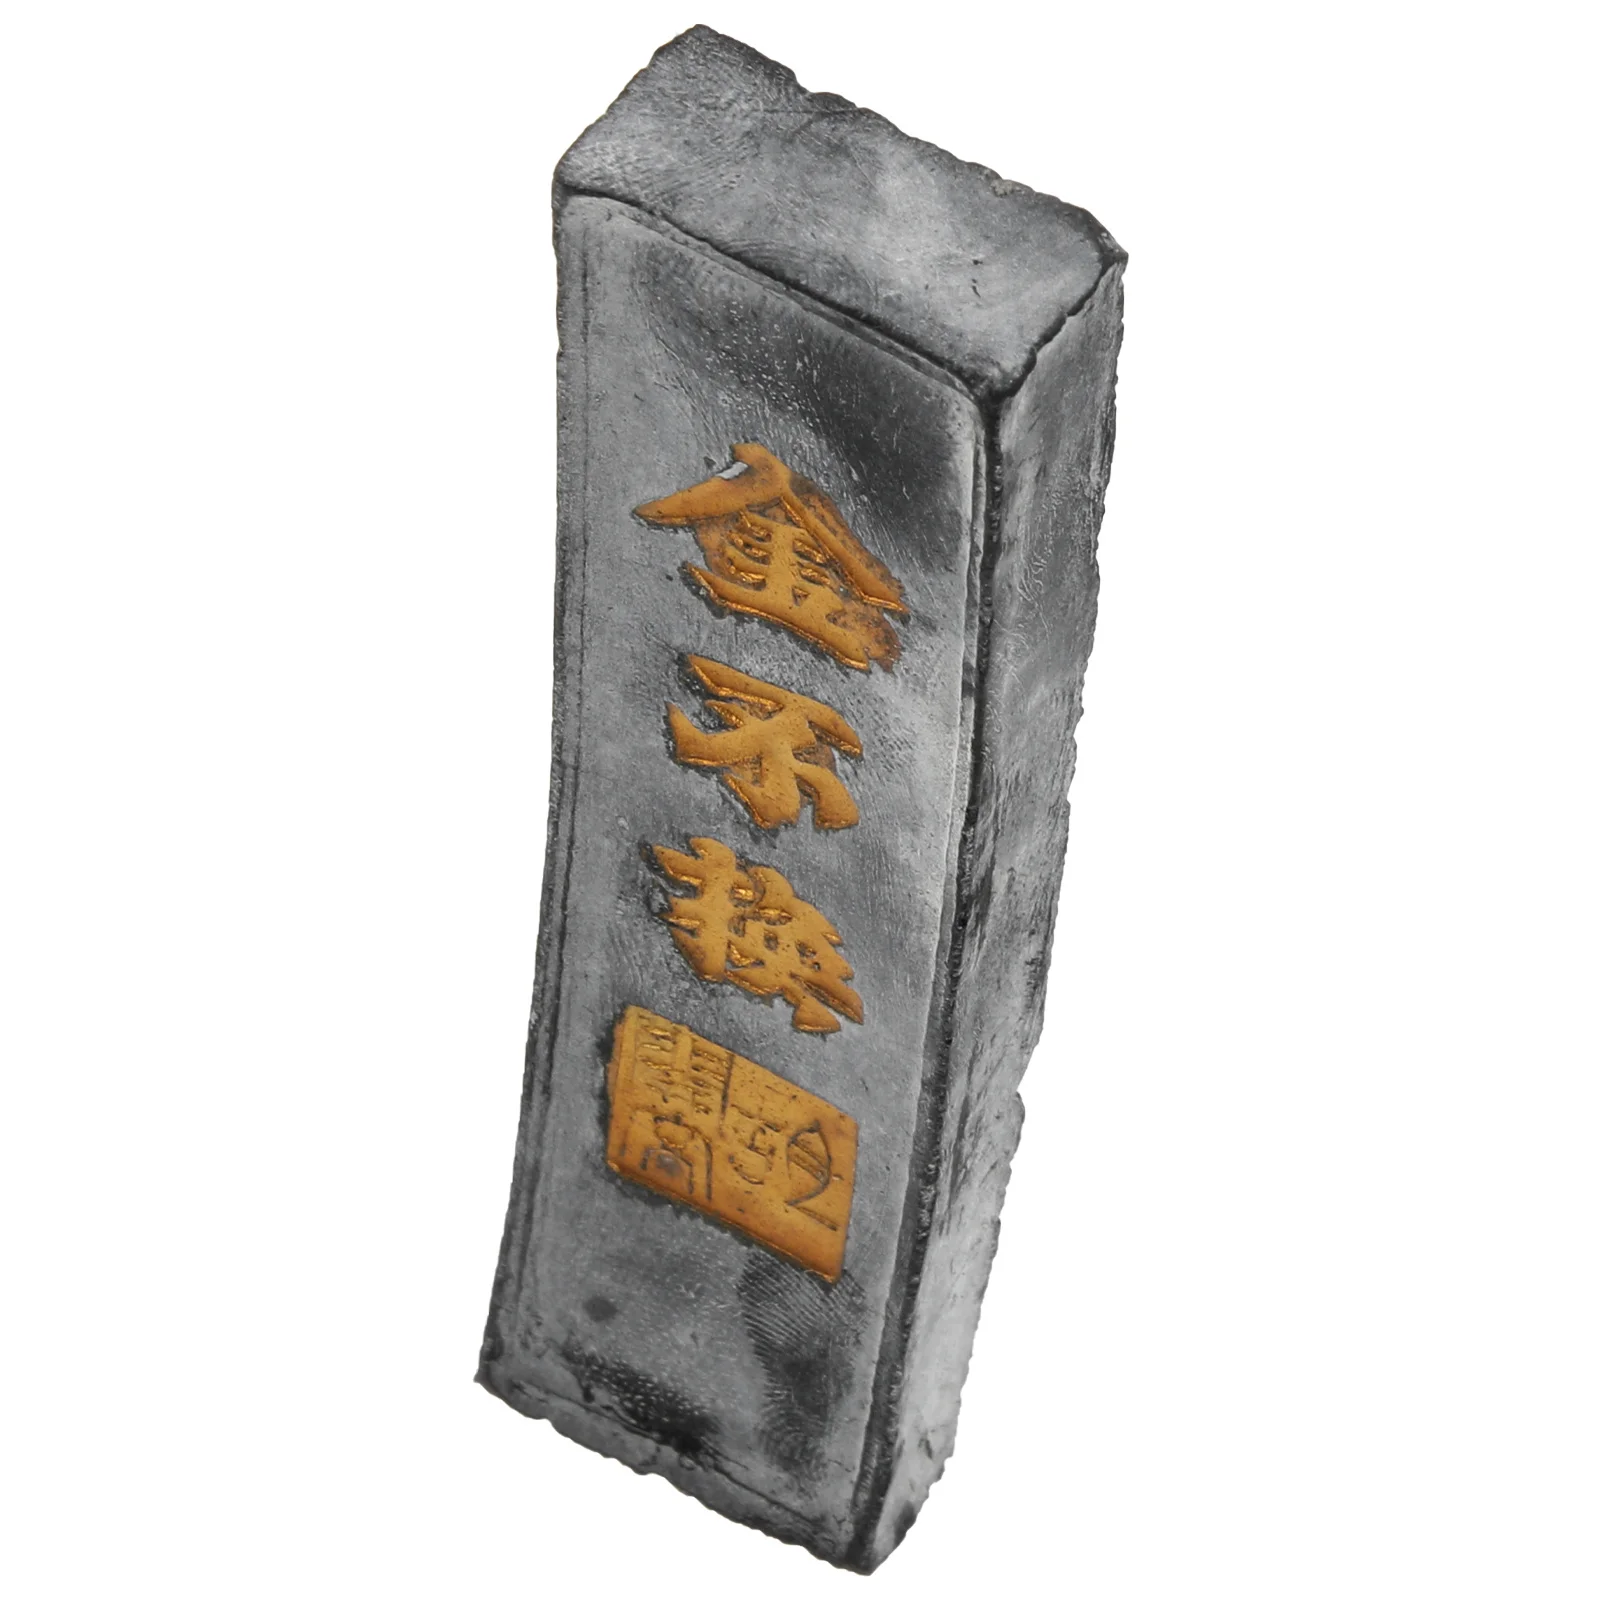 Чернильный камень для китайской каллиграфии, чернильный блок ручной работы, чернильная палочка для китайской японской каллиграфии и живописи (черный)